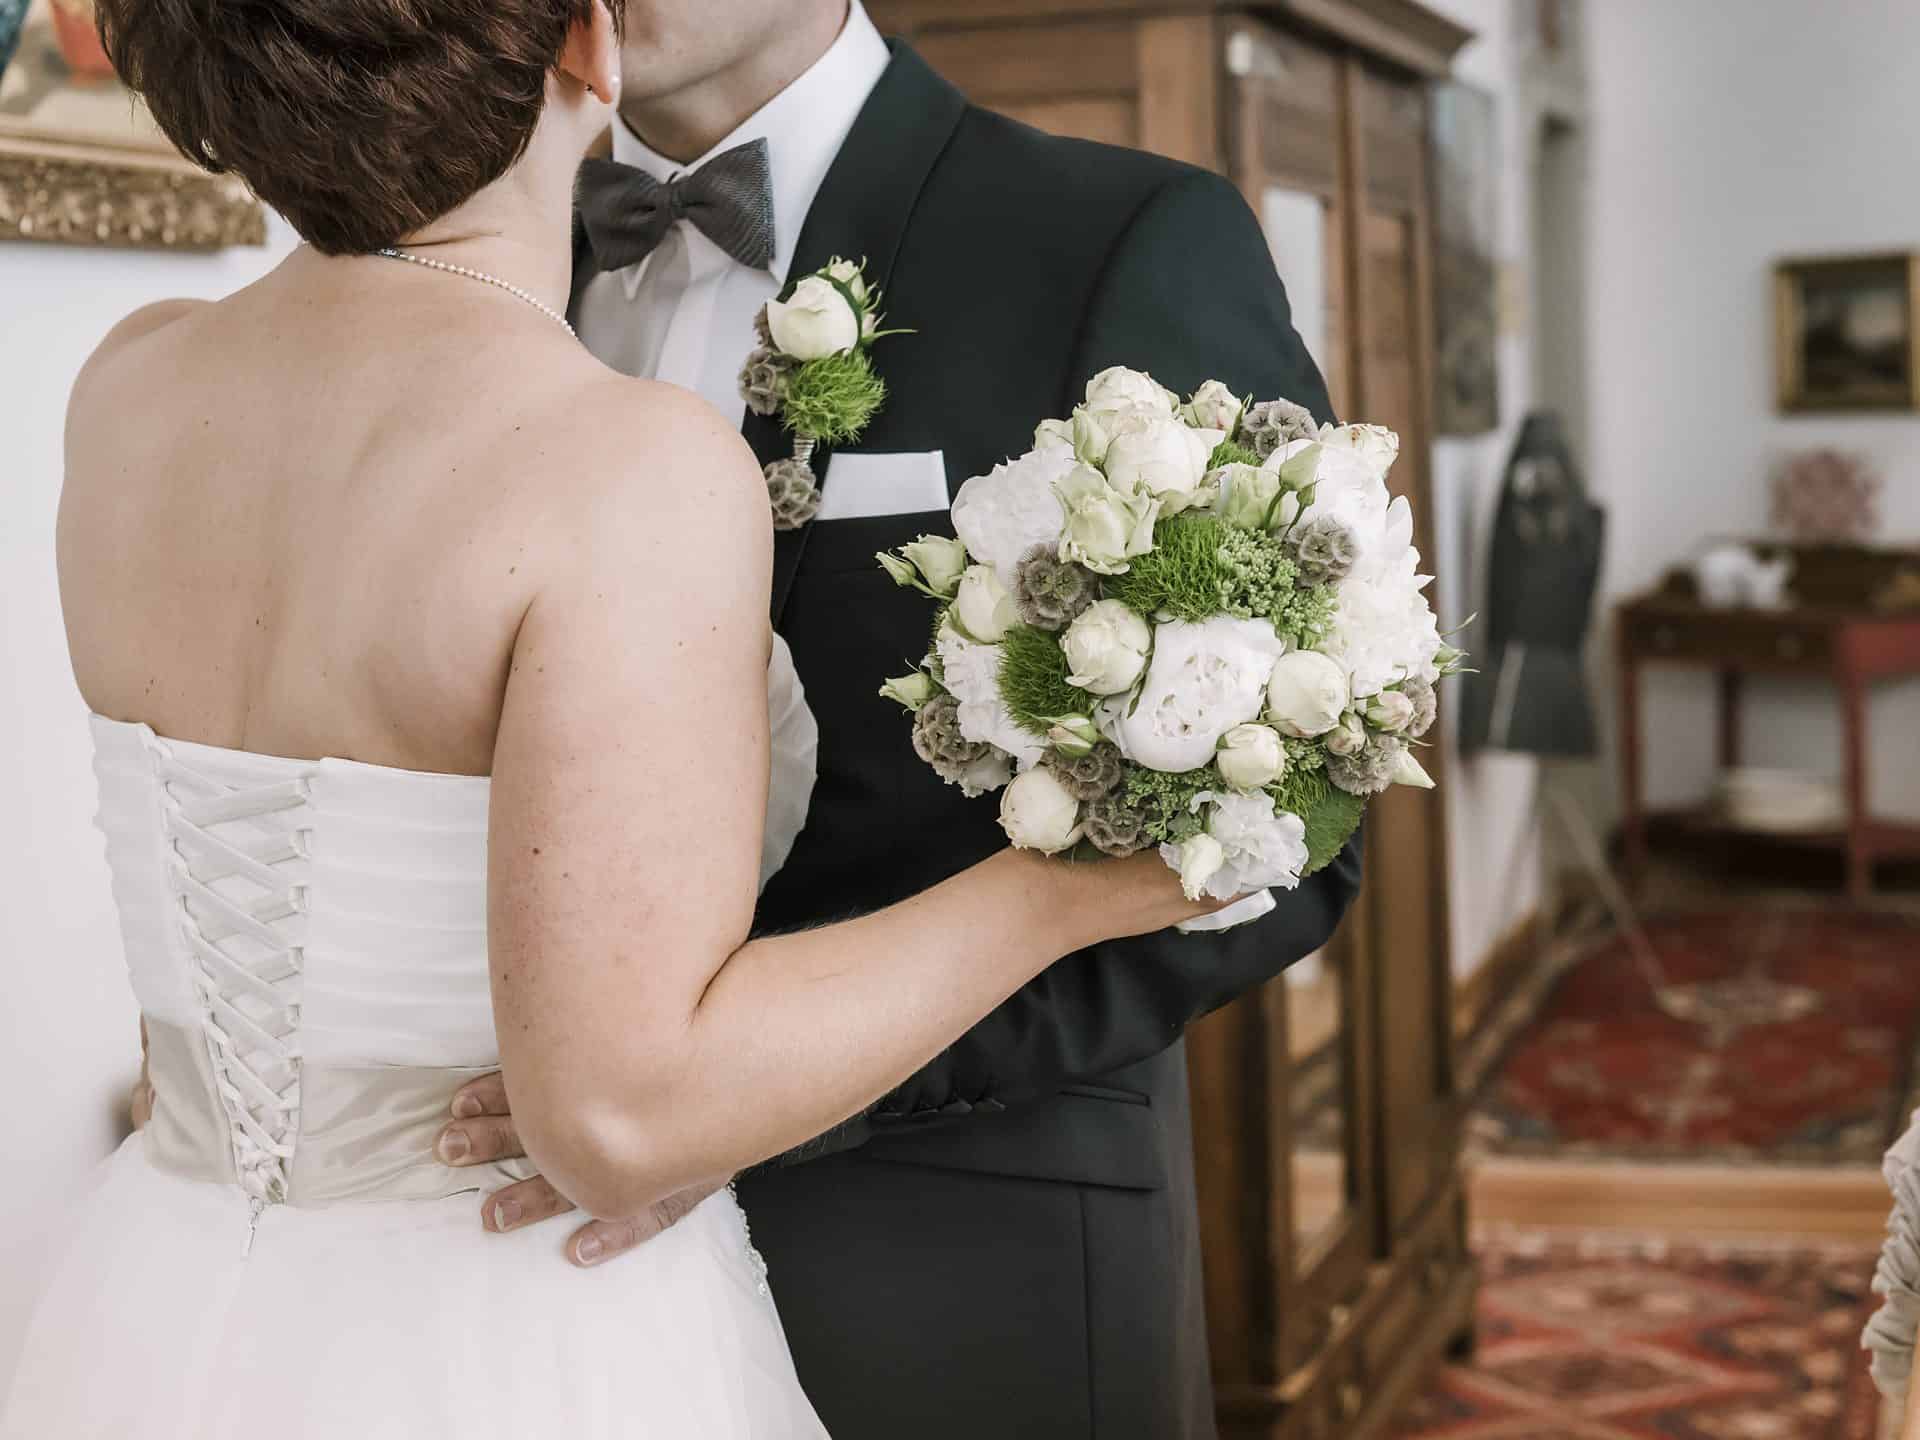 Eine Braut und ein Bräutigam küssen sich vor einem Spiegel.